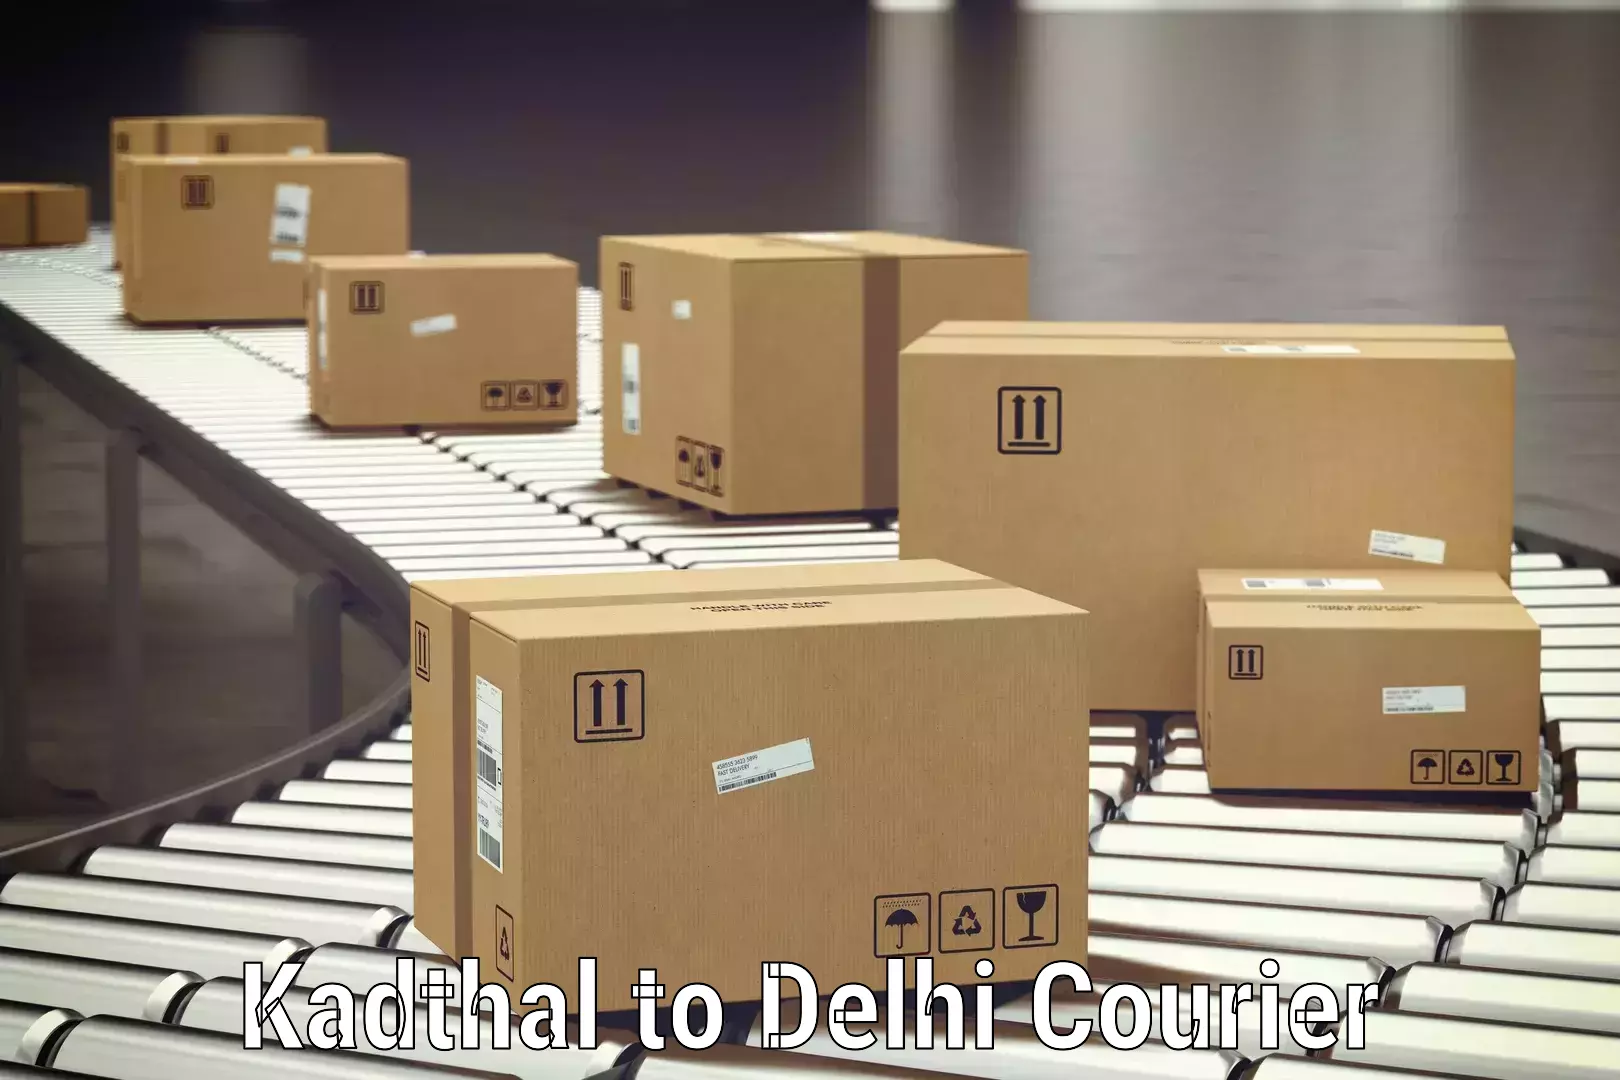 Baggage delivery technology Kadthal to Subhash Nagar